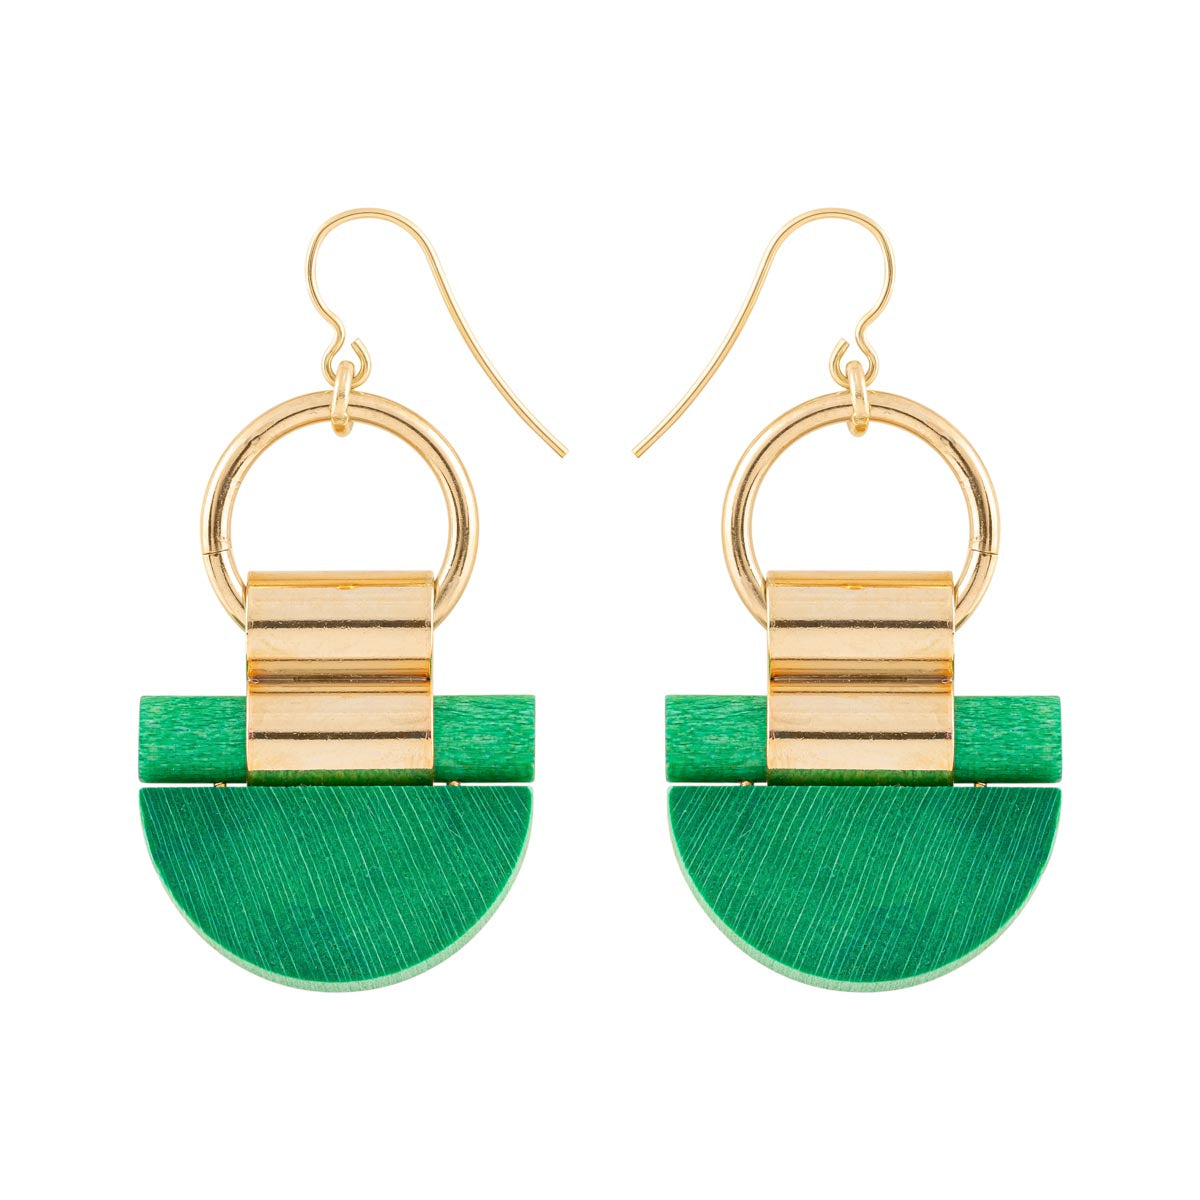 Kelohonka earrings, green and gold